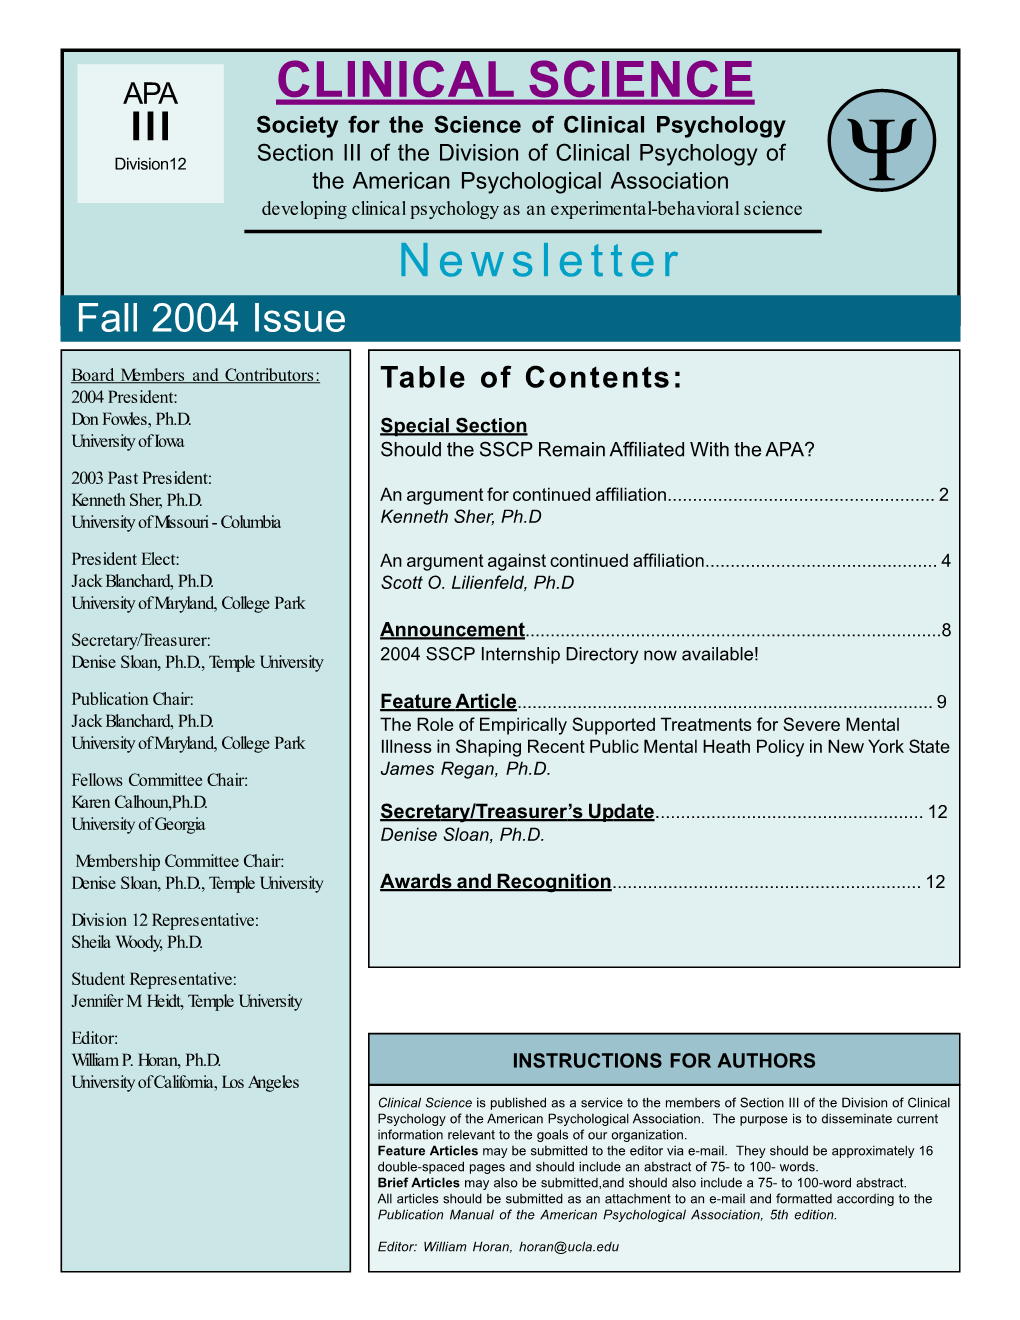 Fall 2004 Newsletter 2